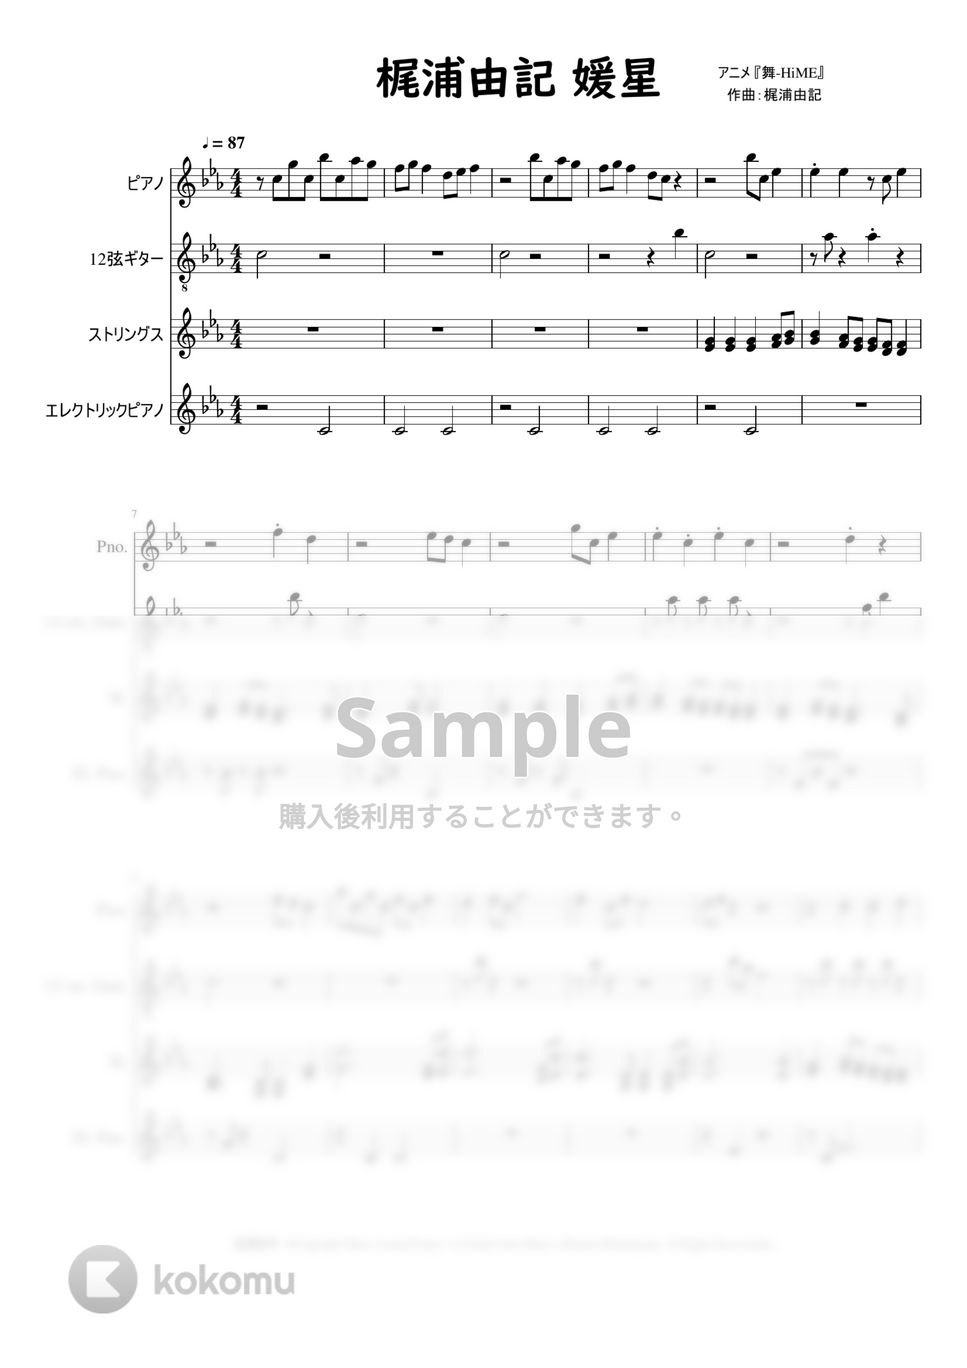 梶浦由記 - 媛星 (オリジナルサウンドトラック) by Mitsuru Minamiyama